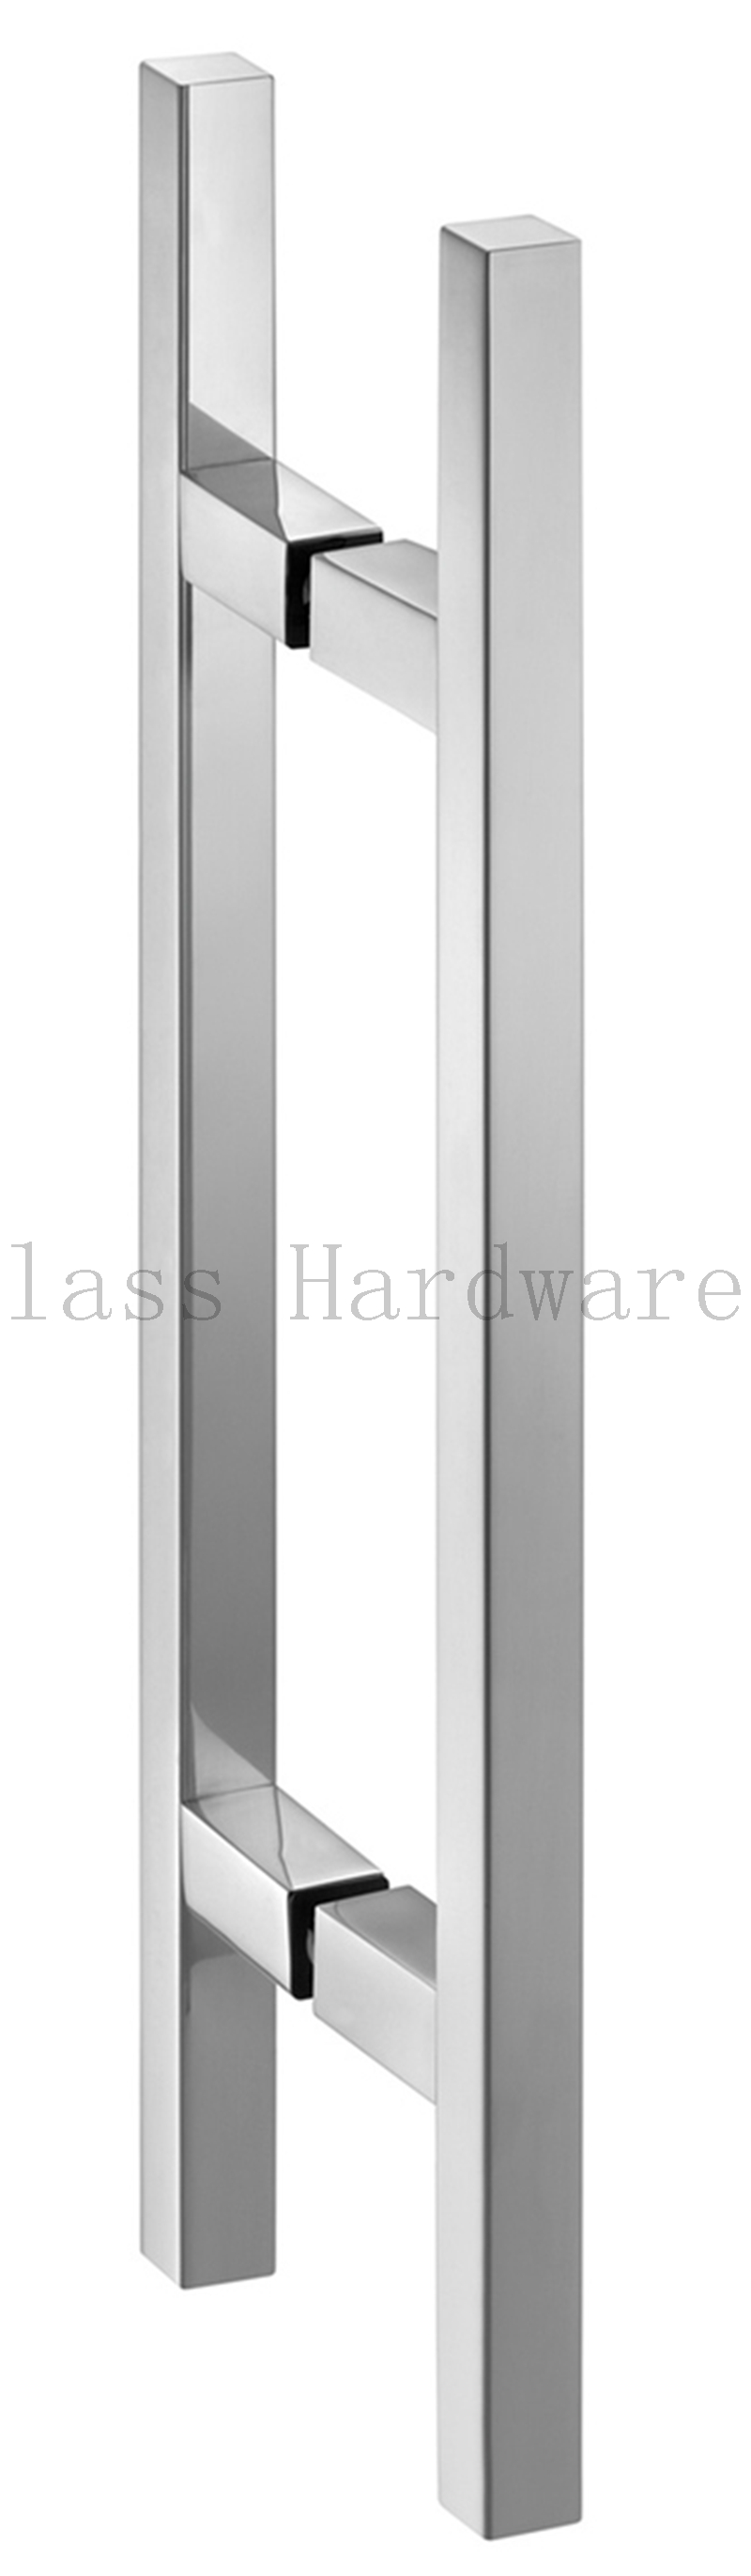 Stainless Steel Commercial Door Handle